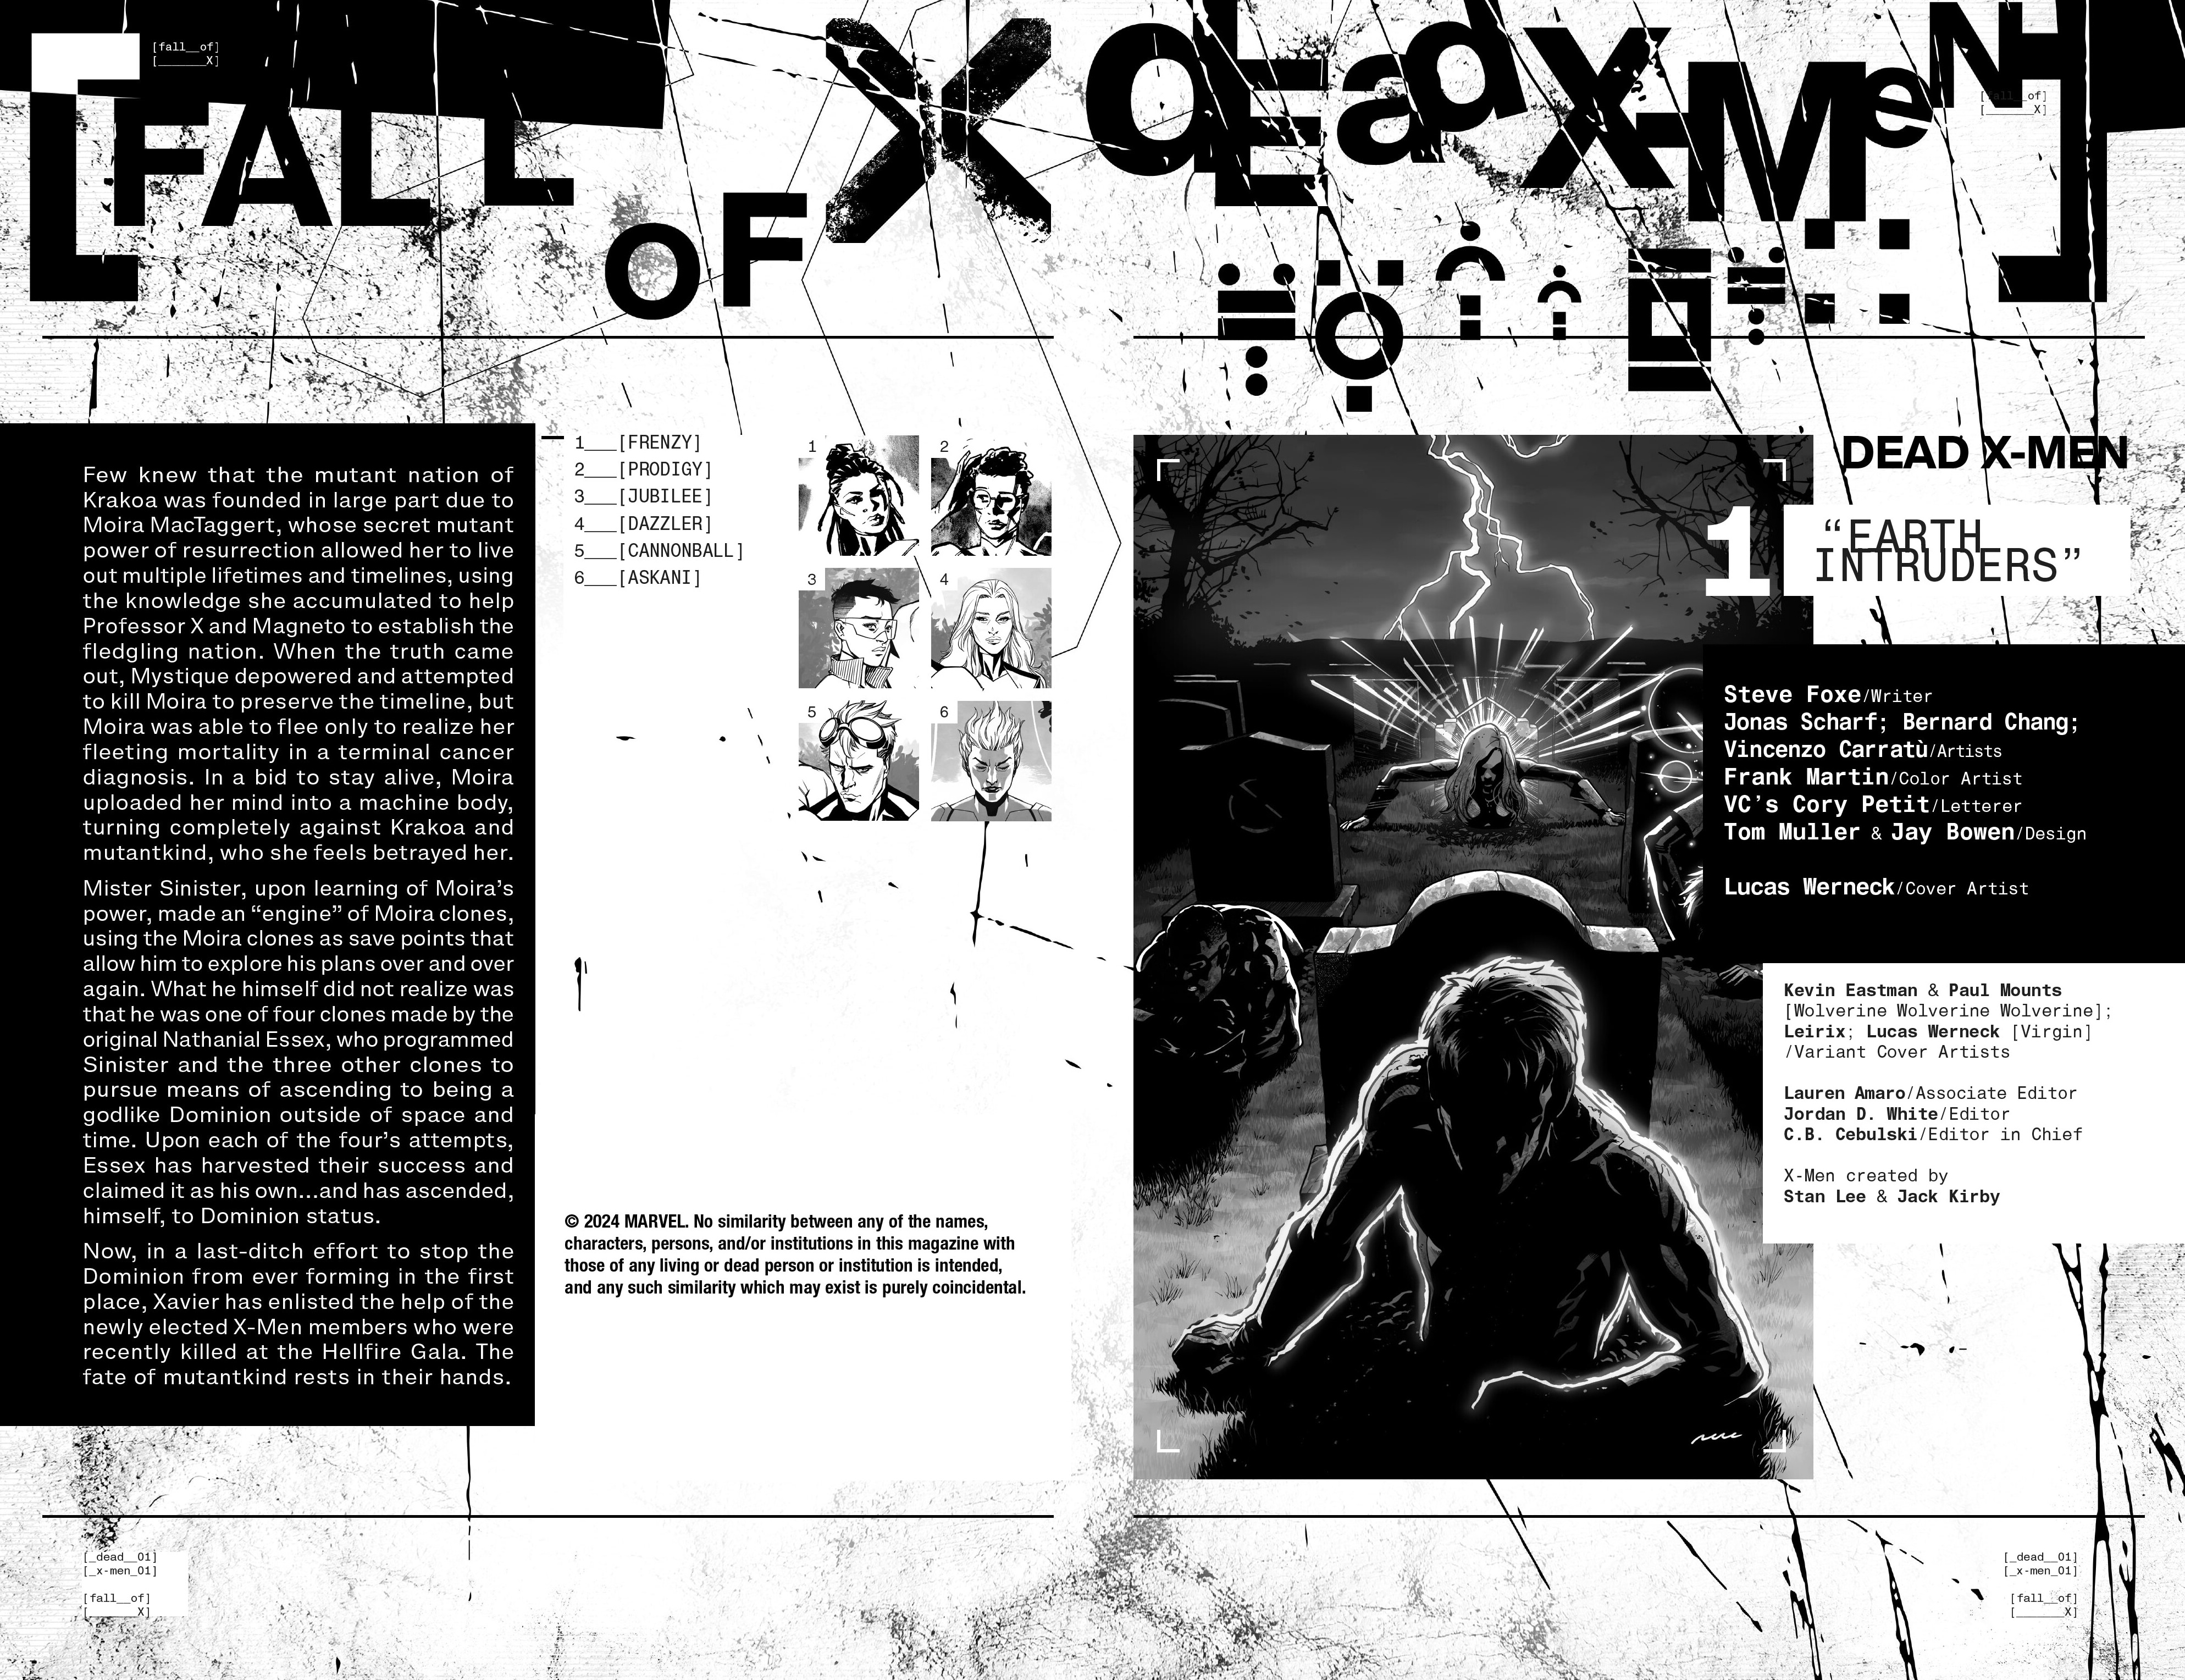 Read online Dead X-Men comic -  Issue #1 - 5